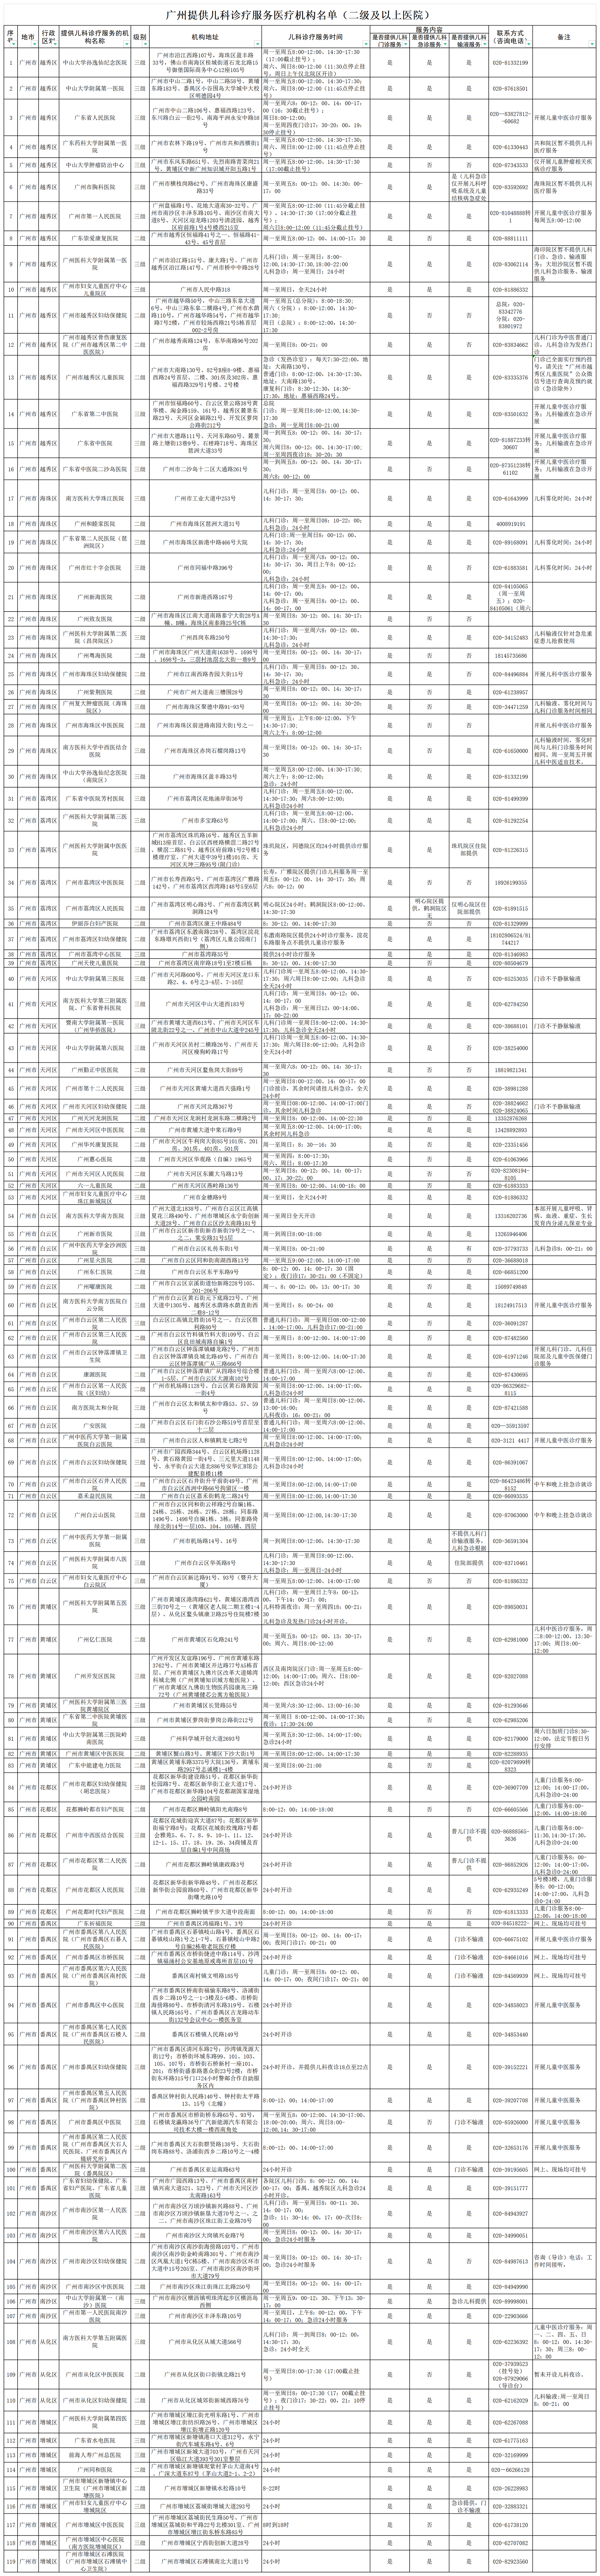 广州提供儿科诊疗服务医疗机构名单（二级及以上医院）20231129更新_Sheet3(1).png